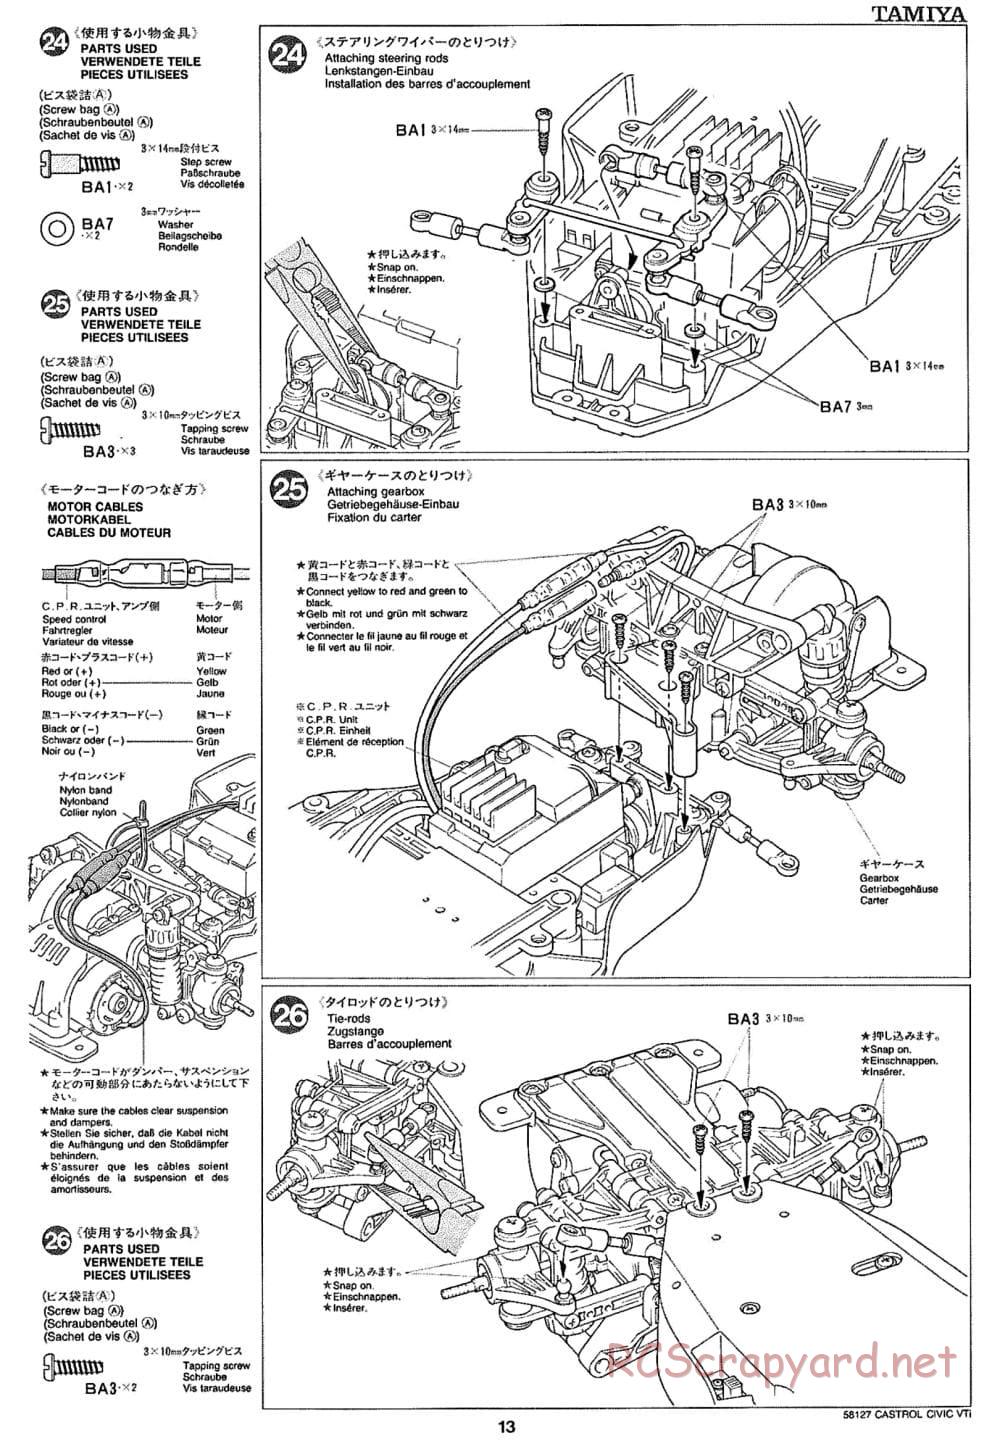 Tamiya - Castrol Honda Civic VTi - FF-01 Chassis - Manual - Page 13